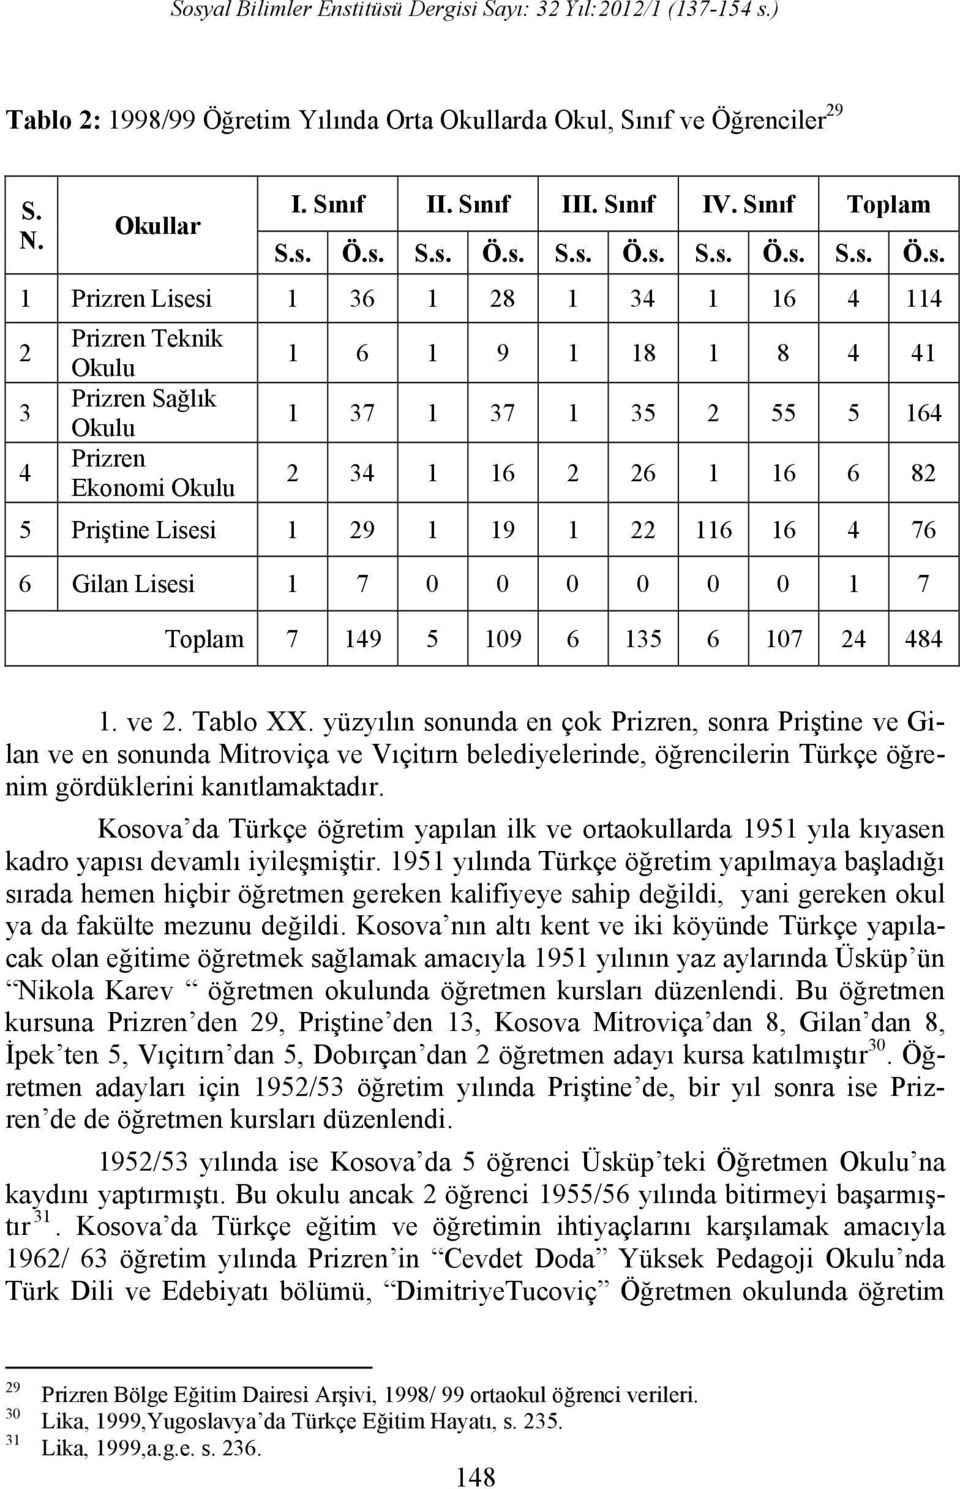 1965 yılına kadar Prizren Cevdet Doda Yüksek Pedagoji Okulu çerçevesinde çalışan Türk Dili ve Edebiyatı bölümünden 9 öğrenci mezun olmuştur 32.